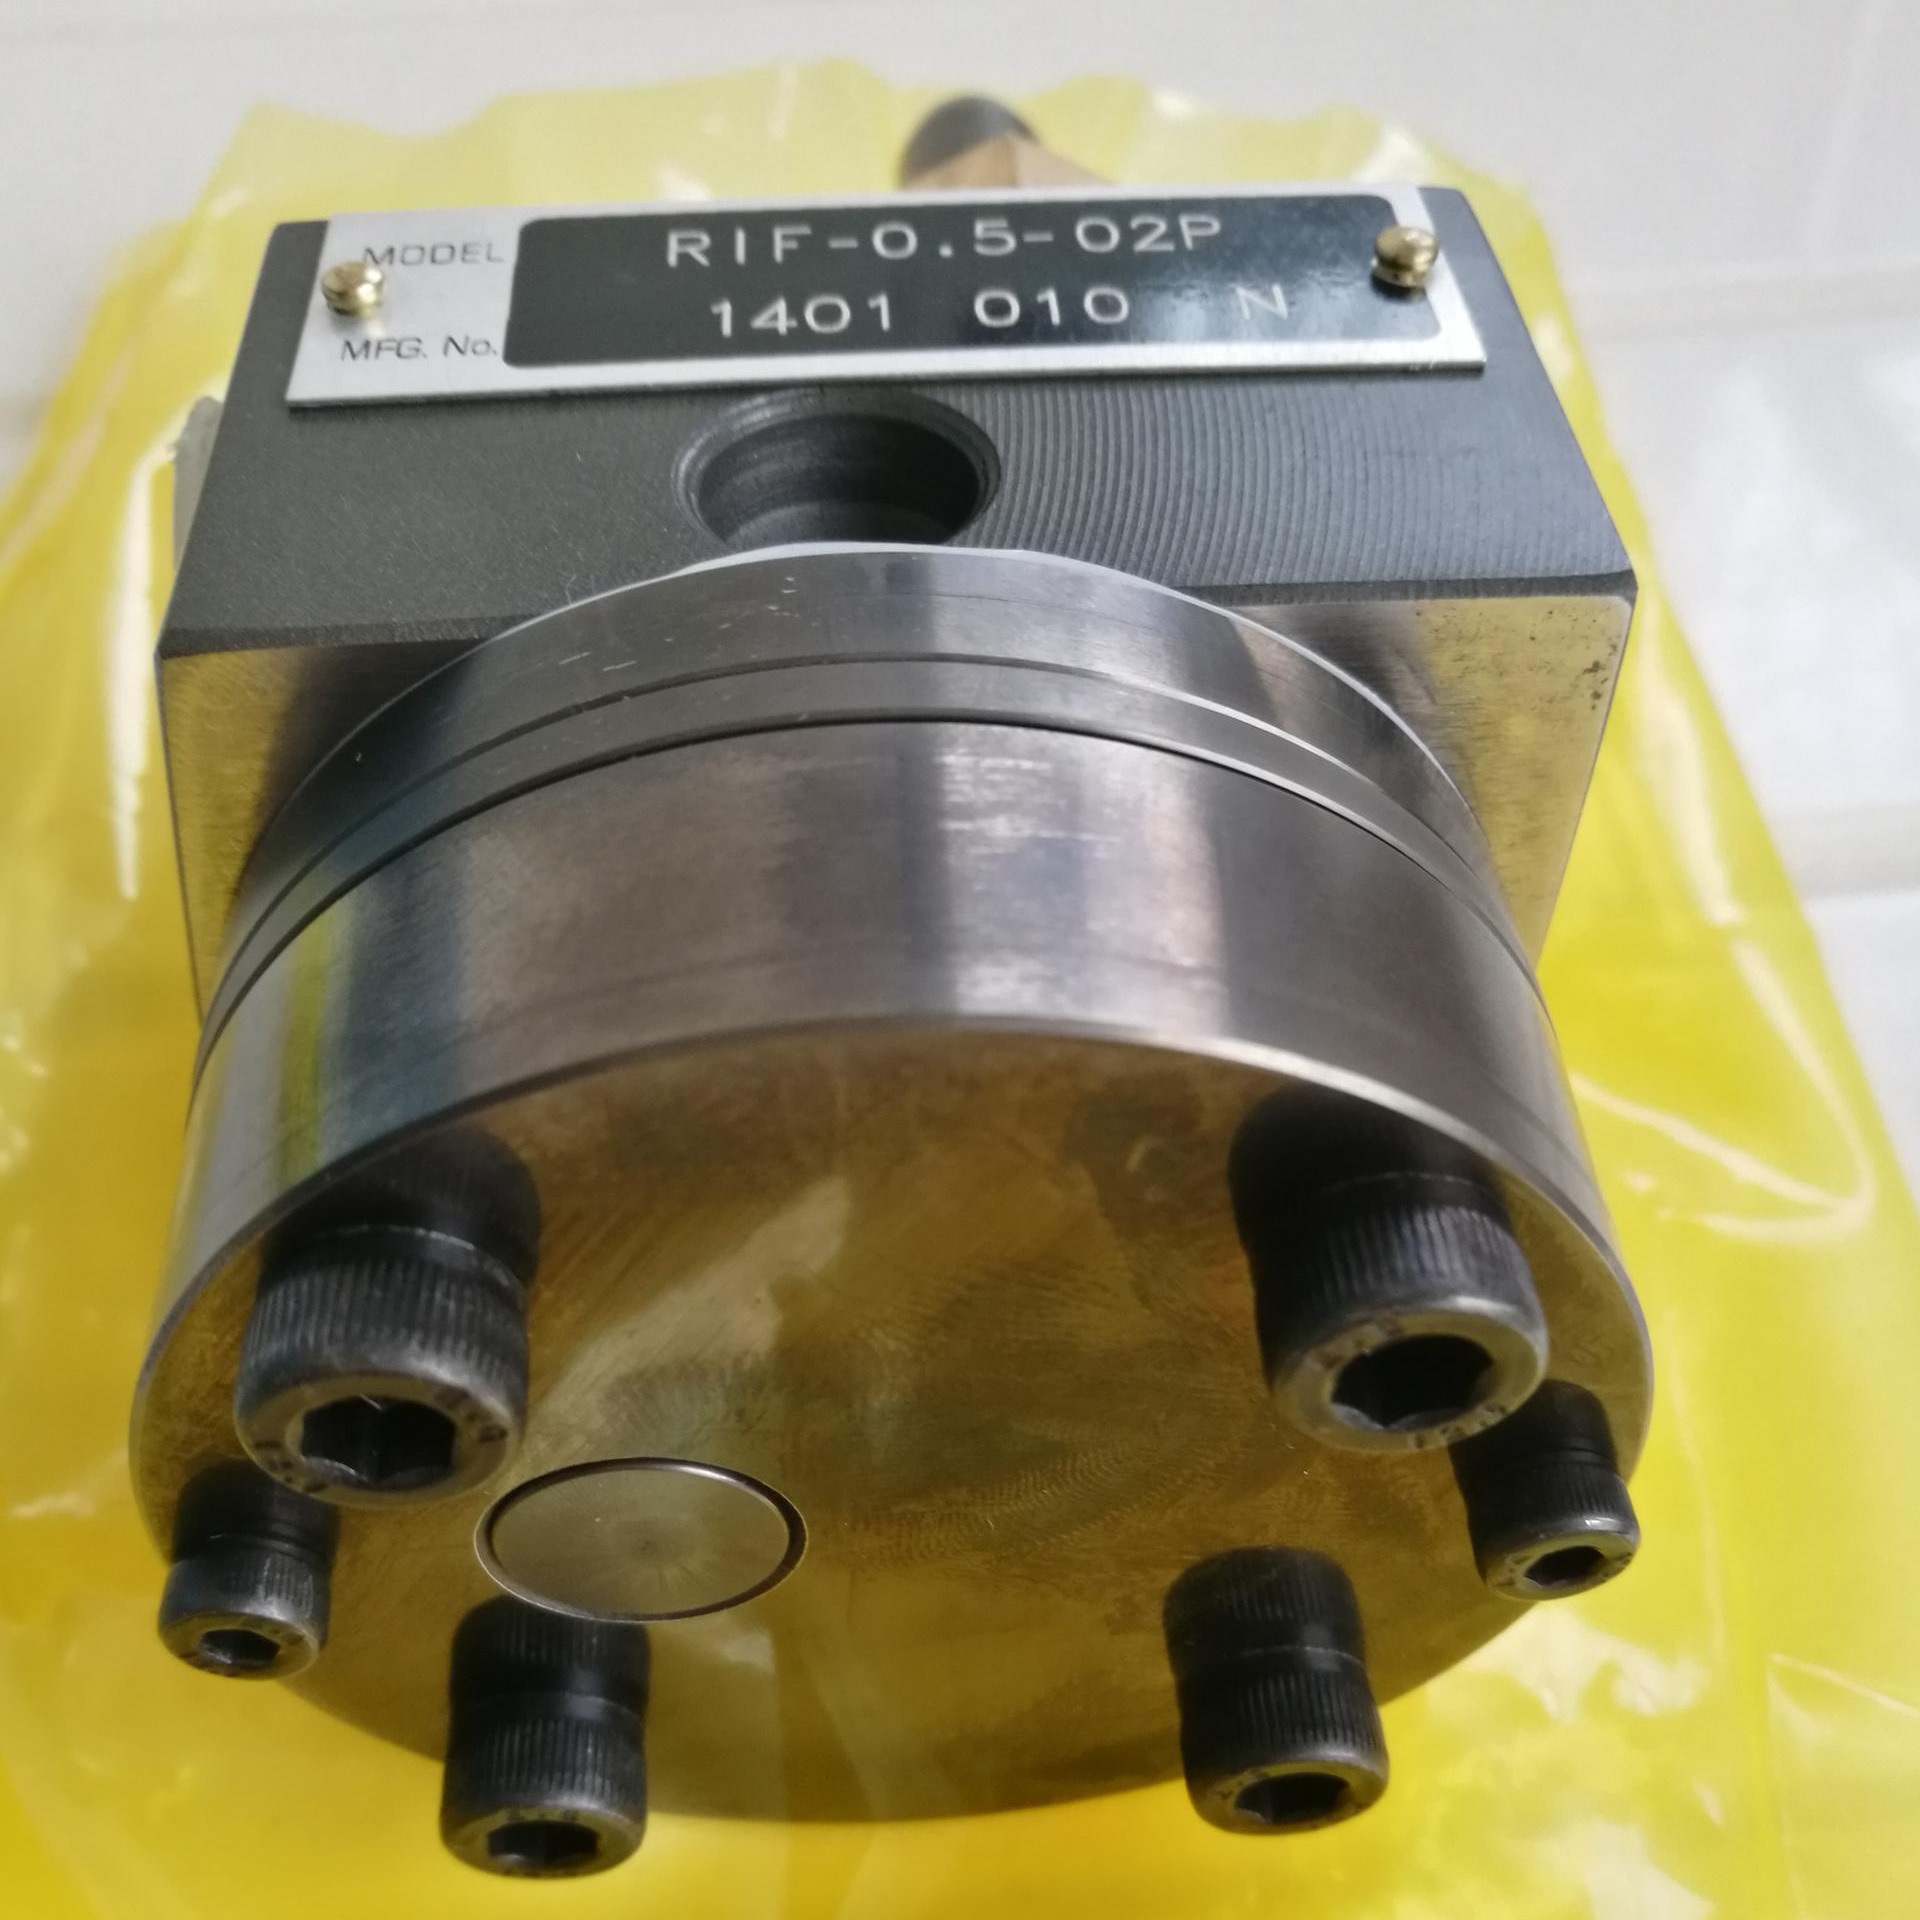 歆励元齿轮泵生产厂家 油墨胶水 灌装机 油漆齿轮泵XLY-5.0-02PM